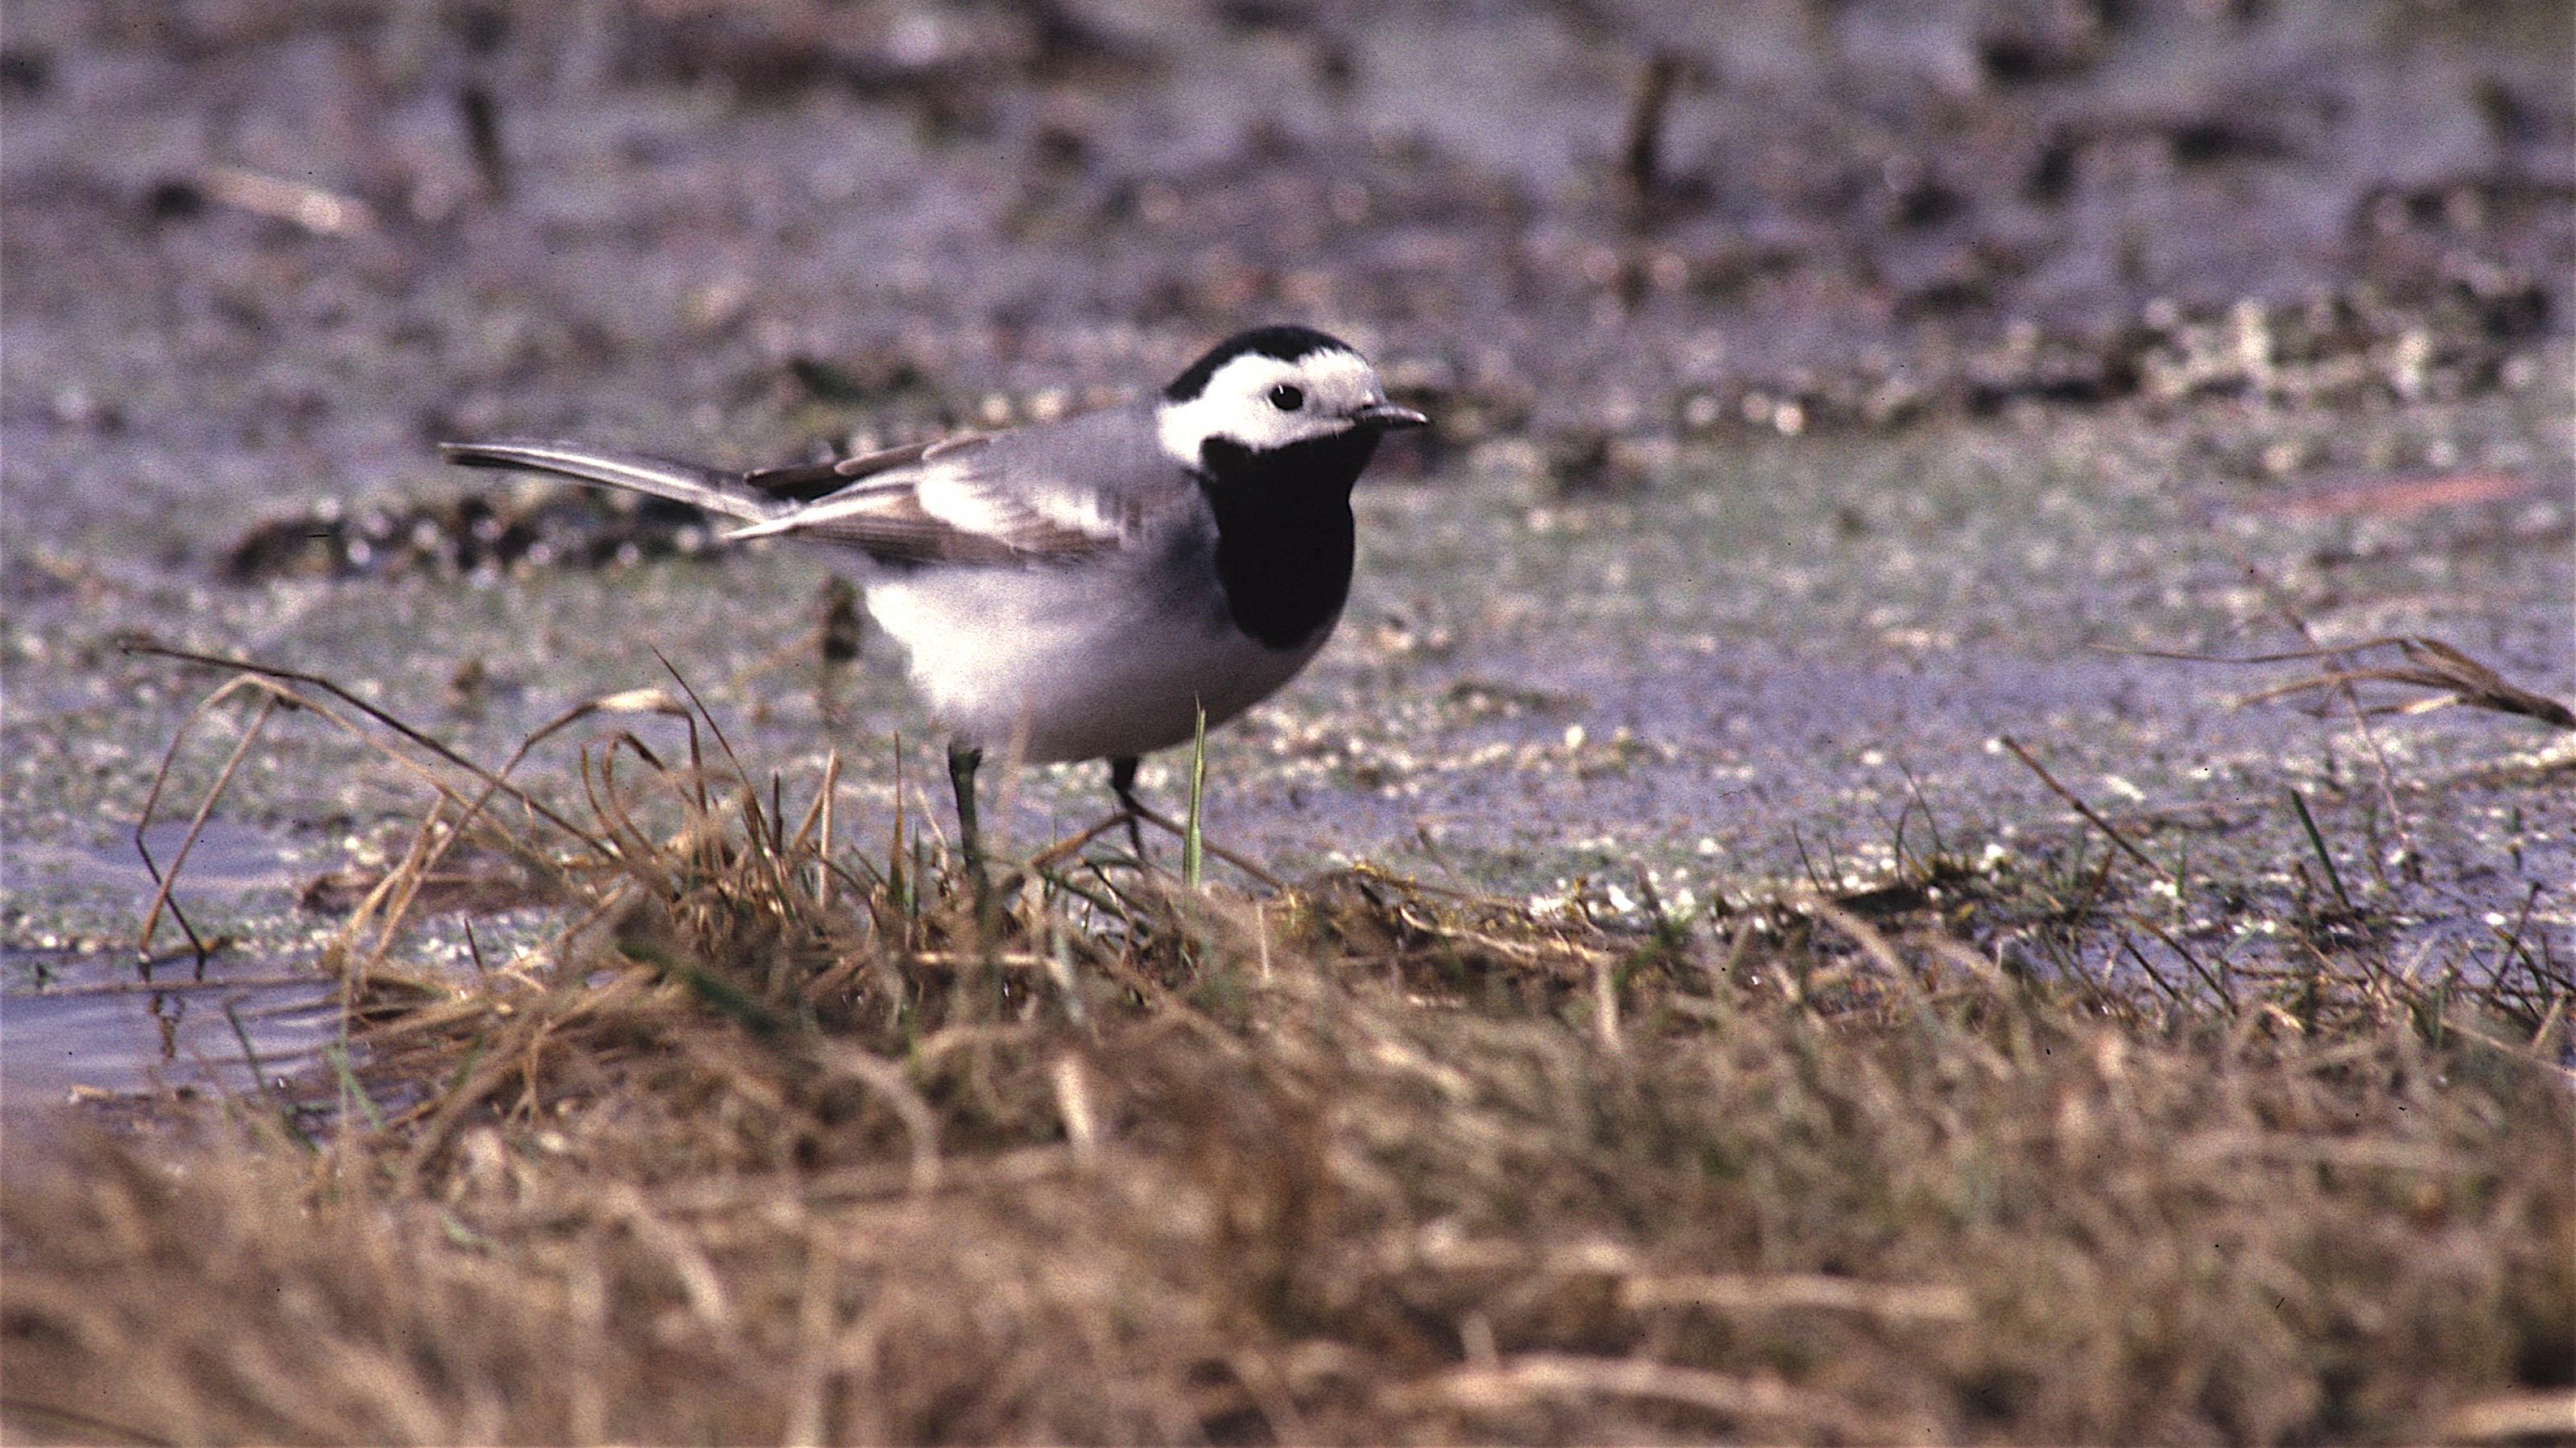 Eine Bachstelze – ein Singvogel mit schwarz-weißem Gefieder – steht neben einem Fluss im Gras.